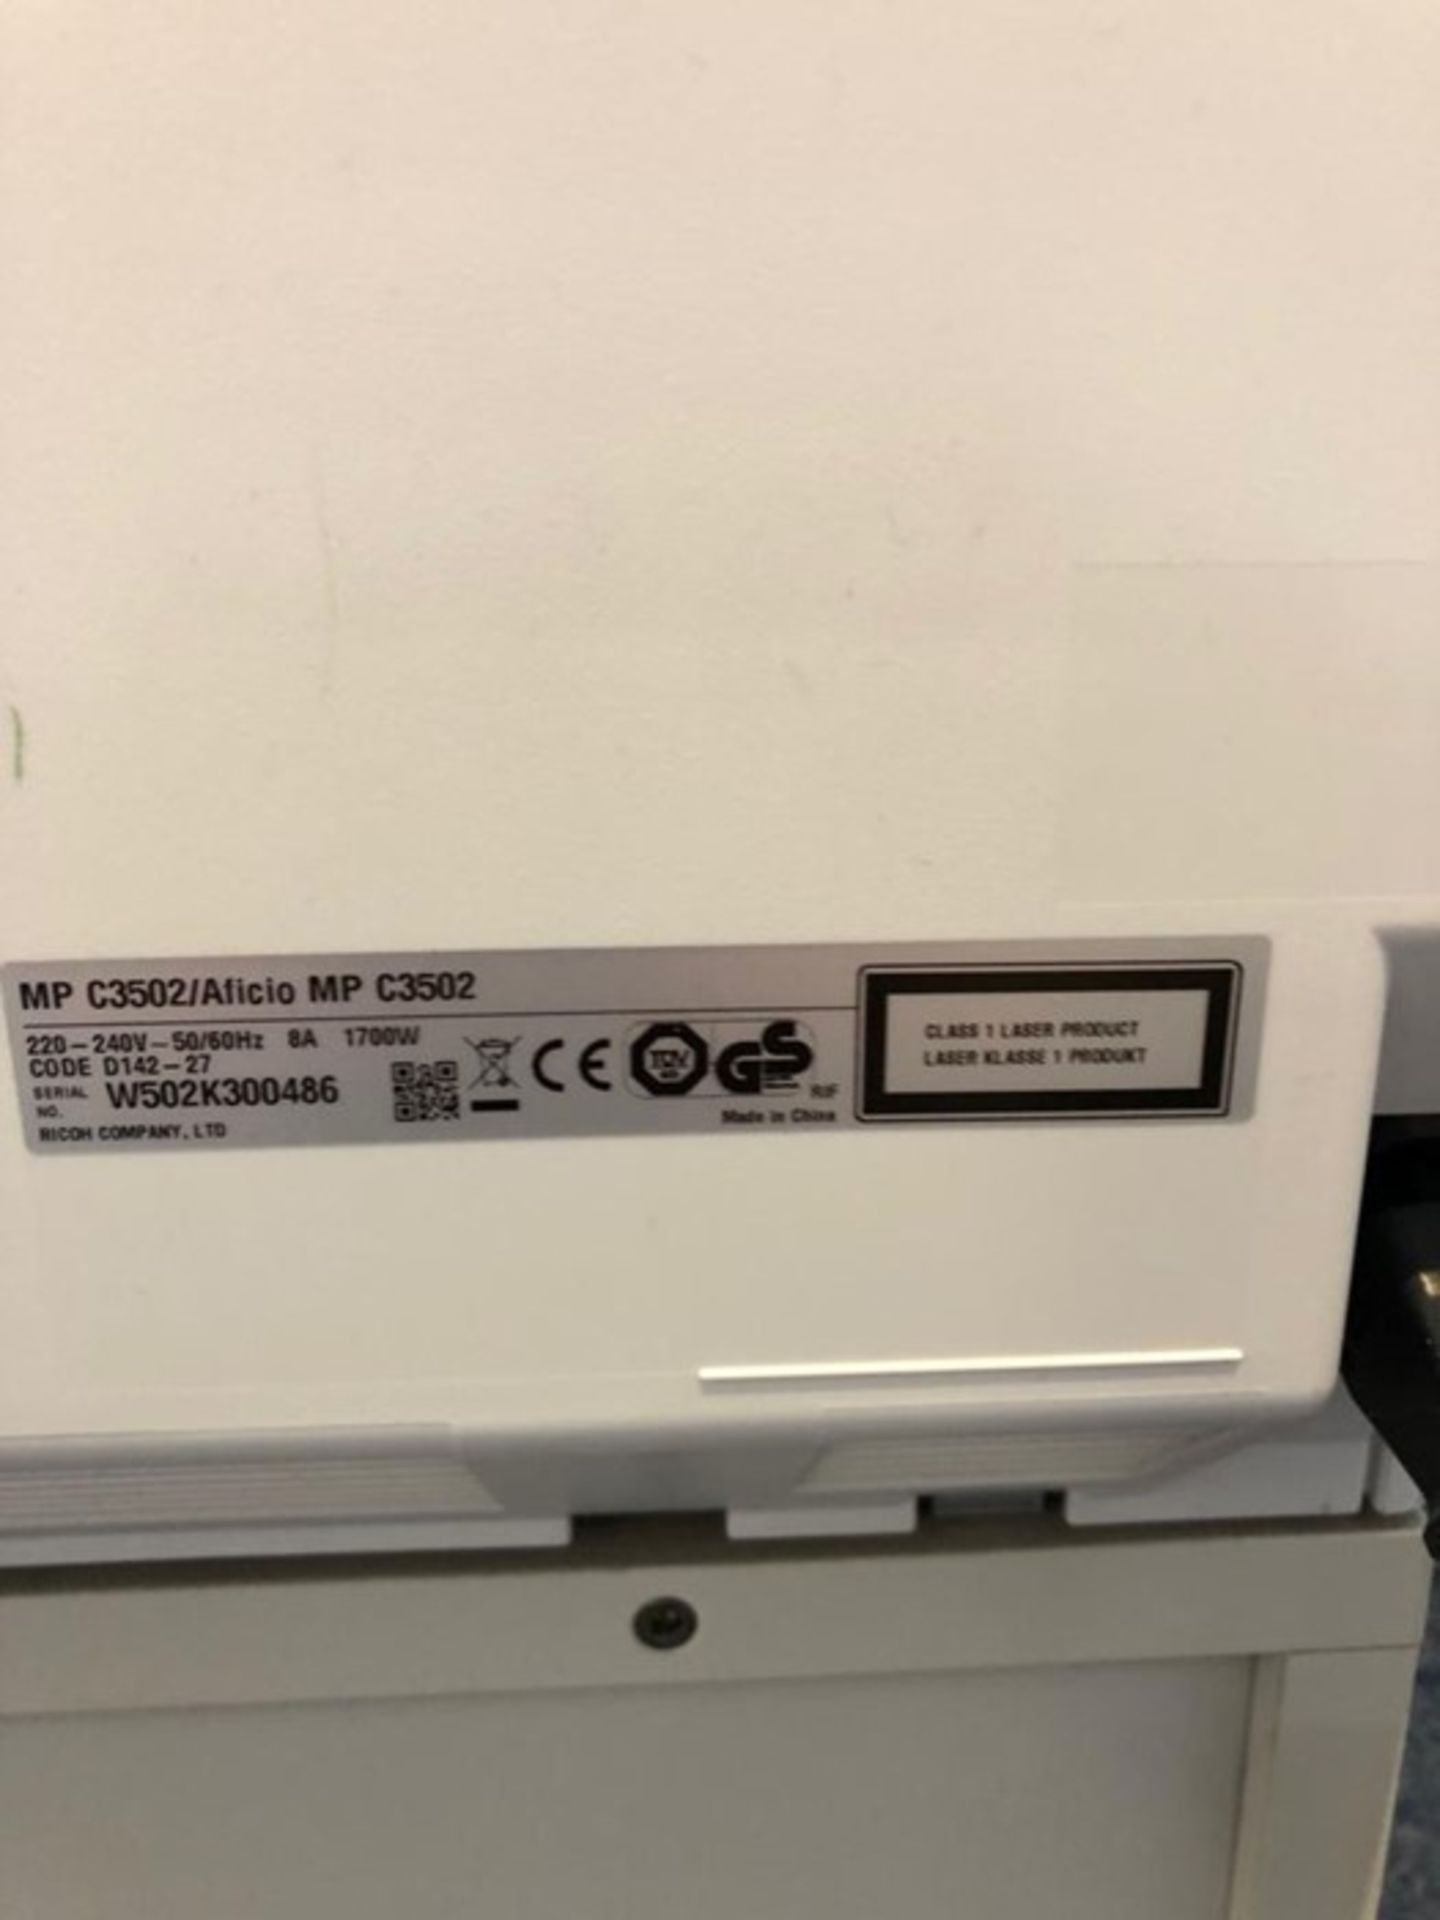 EXTRA LOT - Ricoh Aficio MP C3502 Copier Printer, serial no. W502K300486 - Image 2 of 2